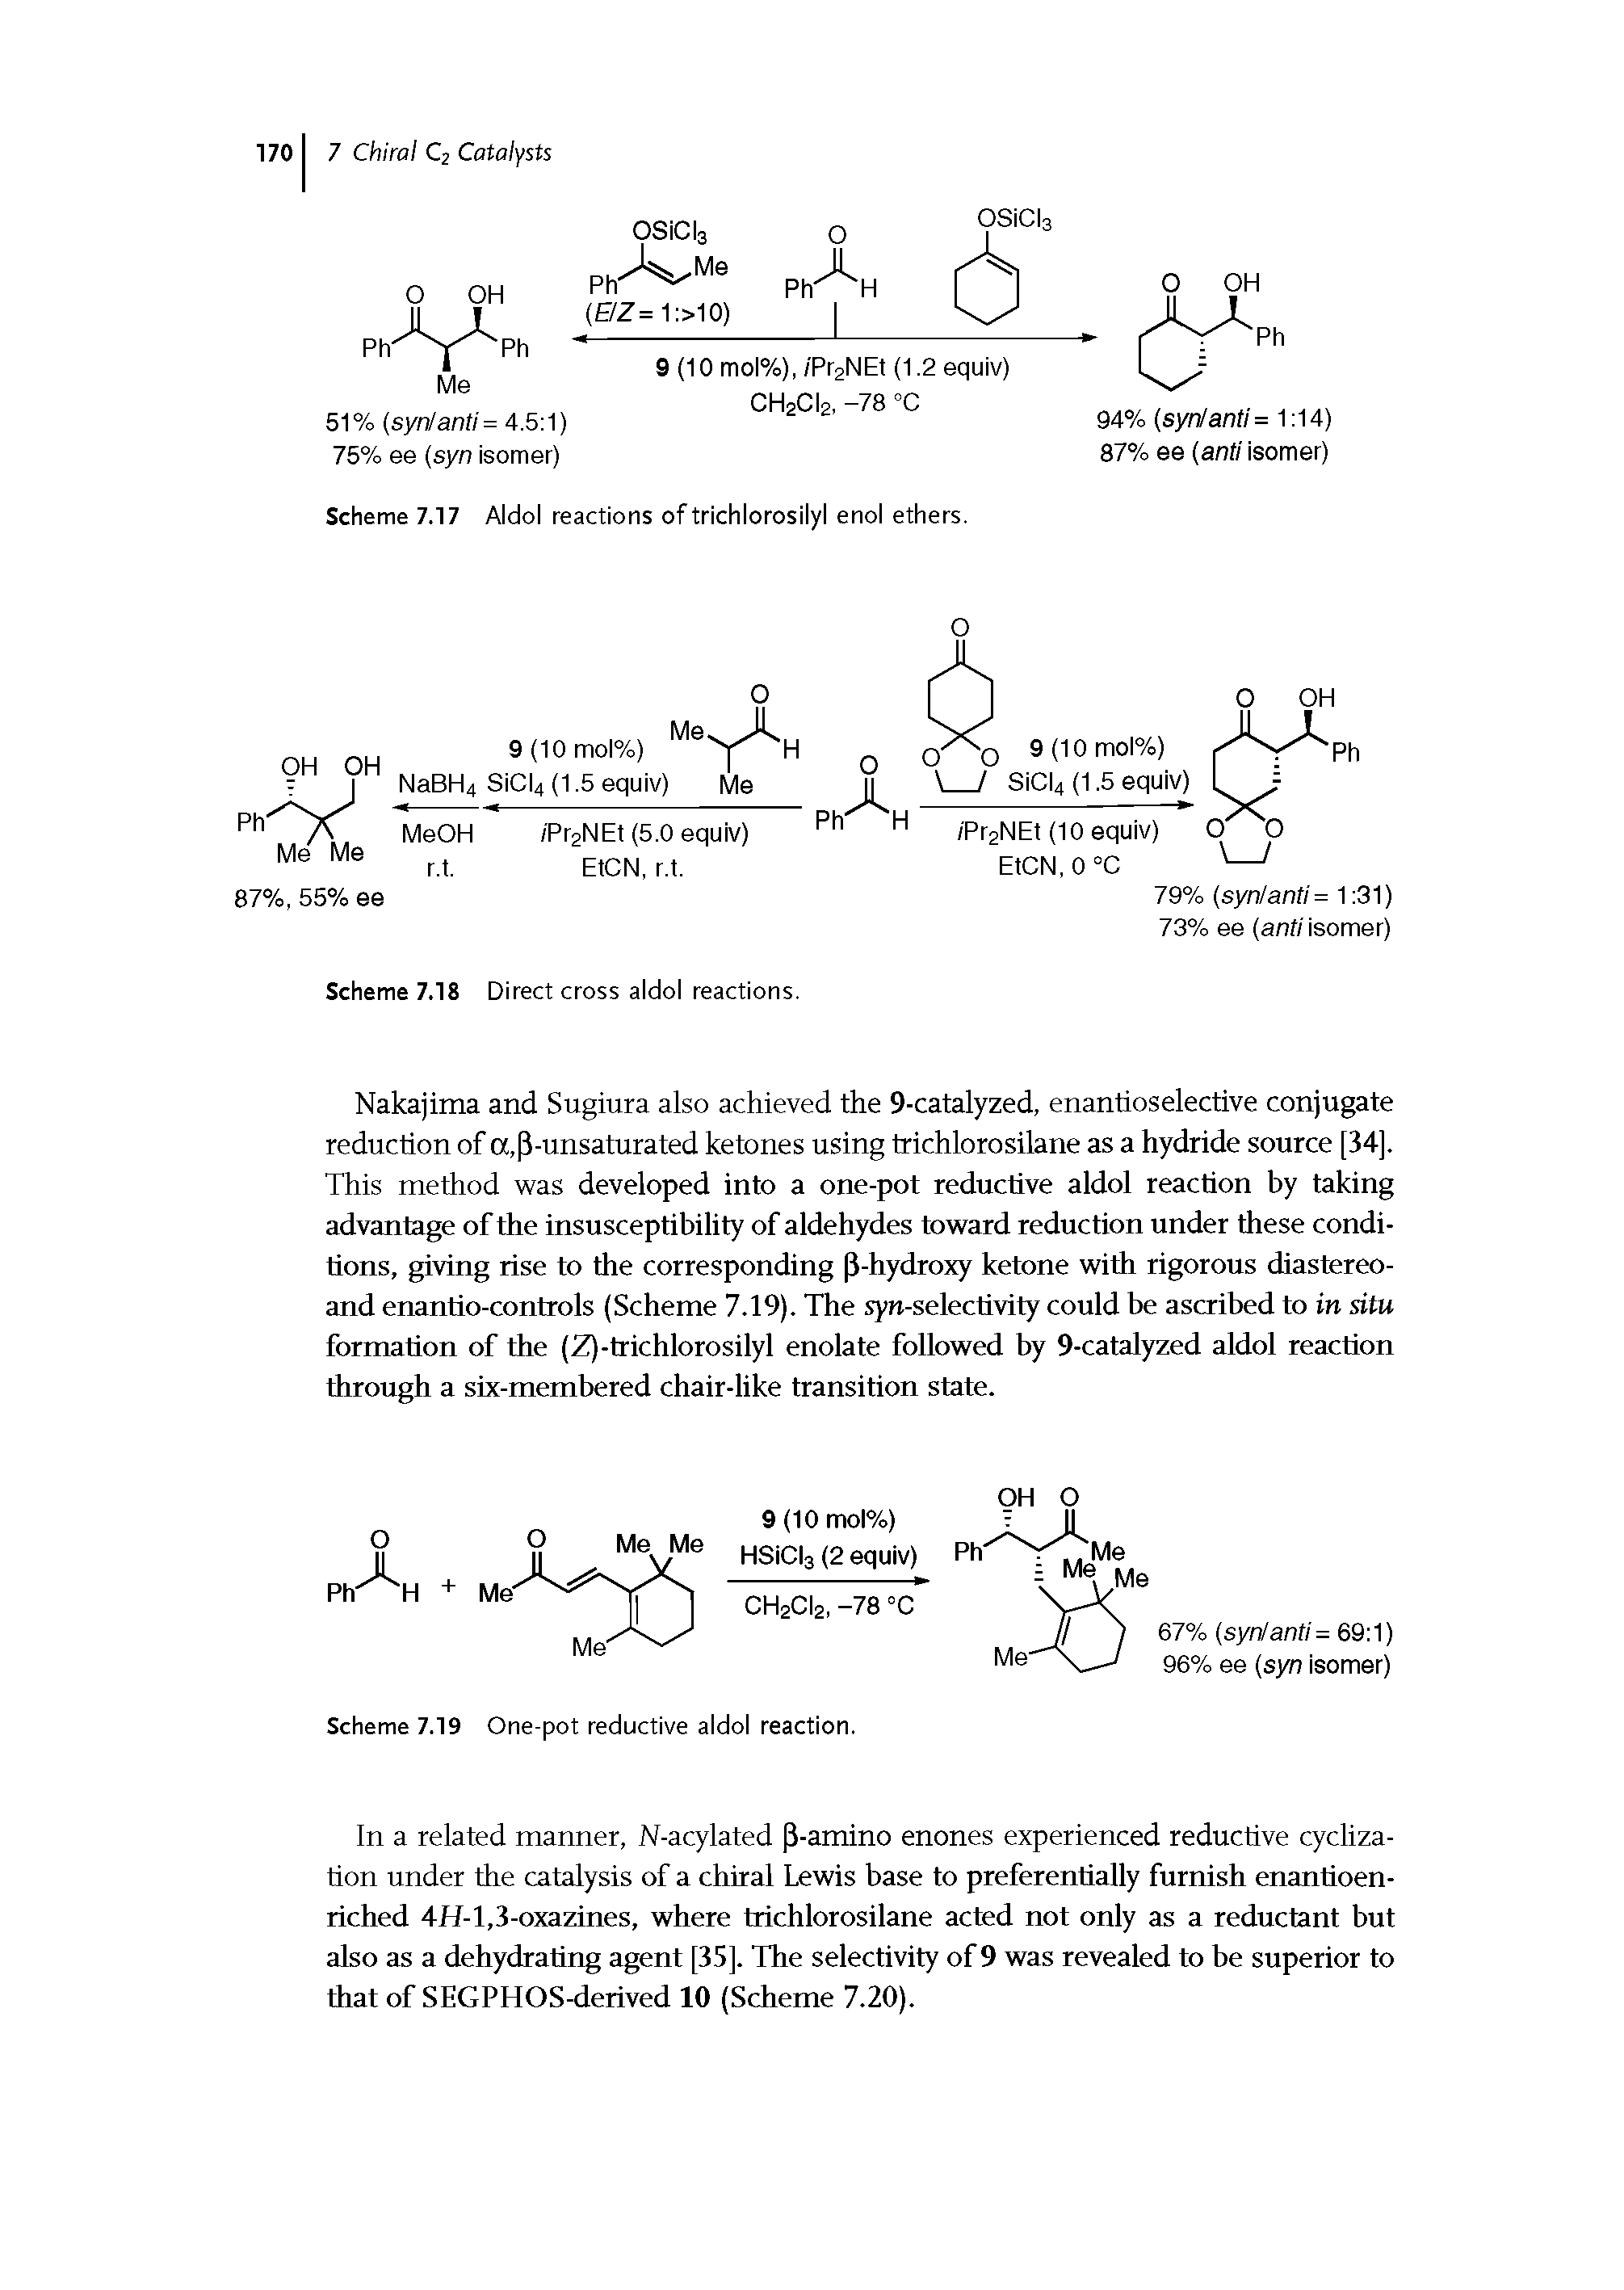 Scheme 7.17 Aldol reactions of trichlorosilyl enol ethers.